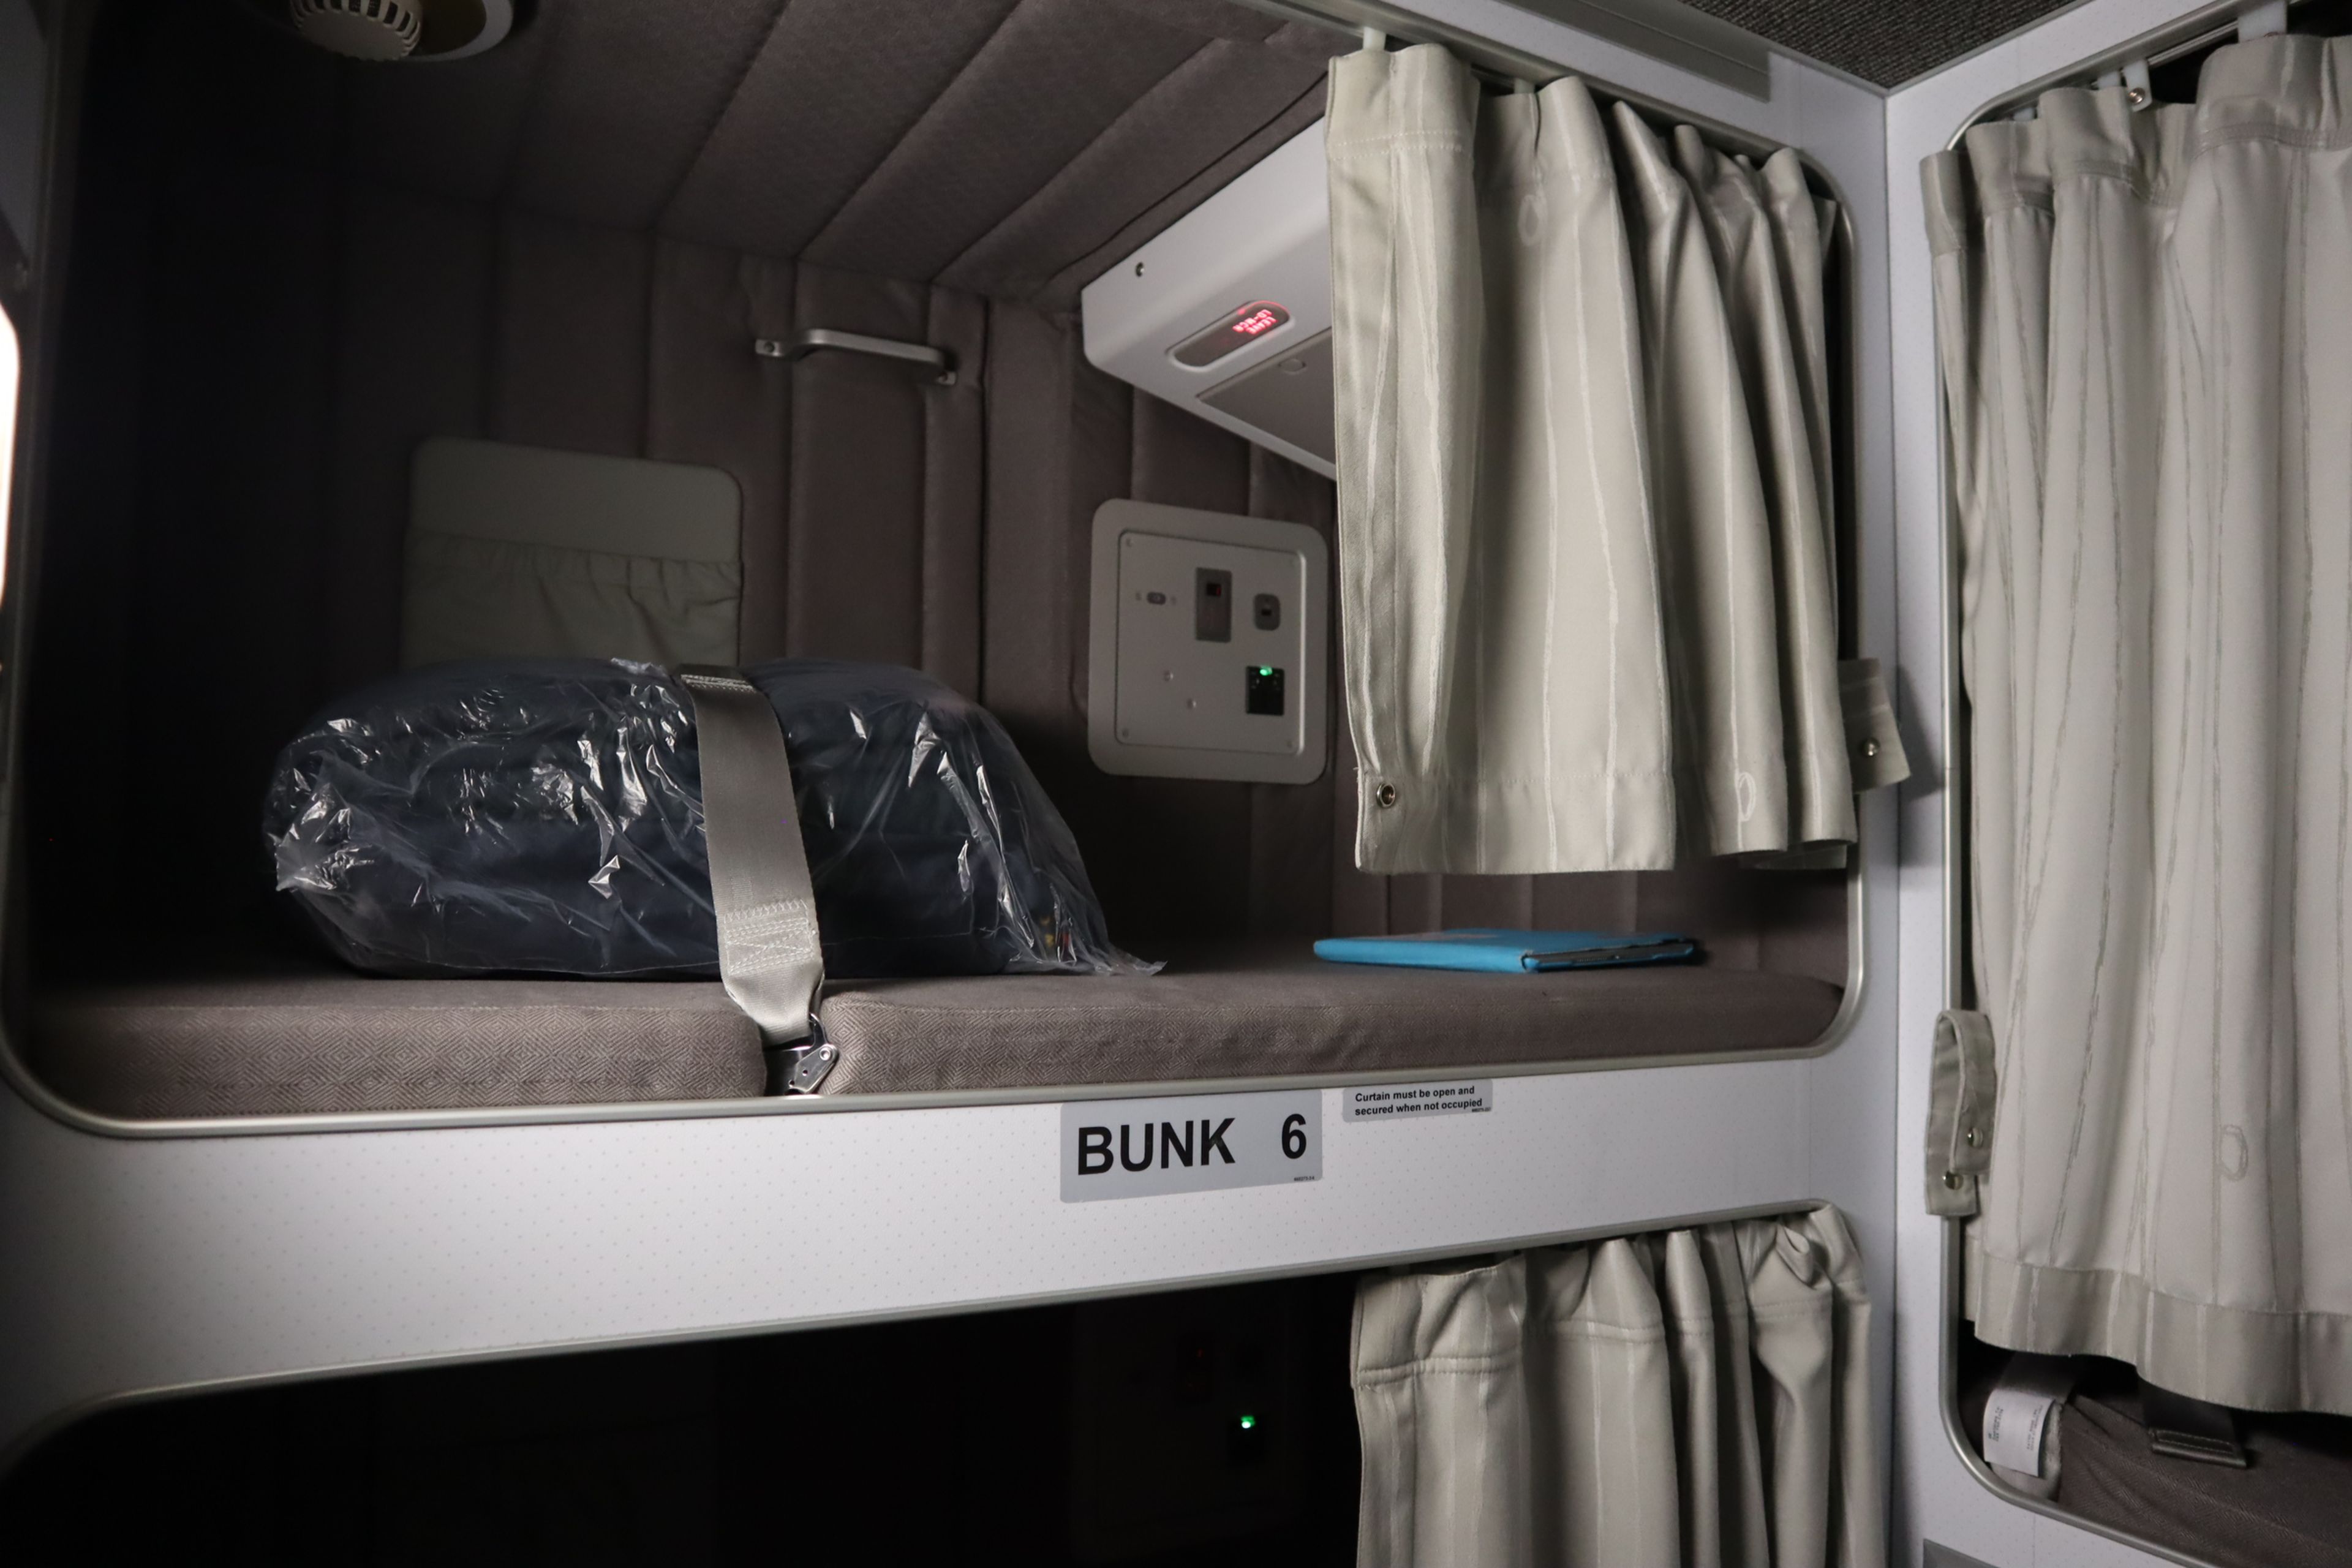 Una de las camas de la litera donde descansa la tripulación auxiliar de vuelo en el Airbus A300-200. / Miriam Pérez